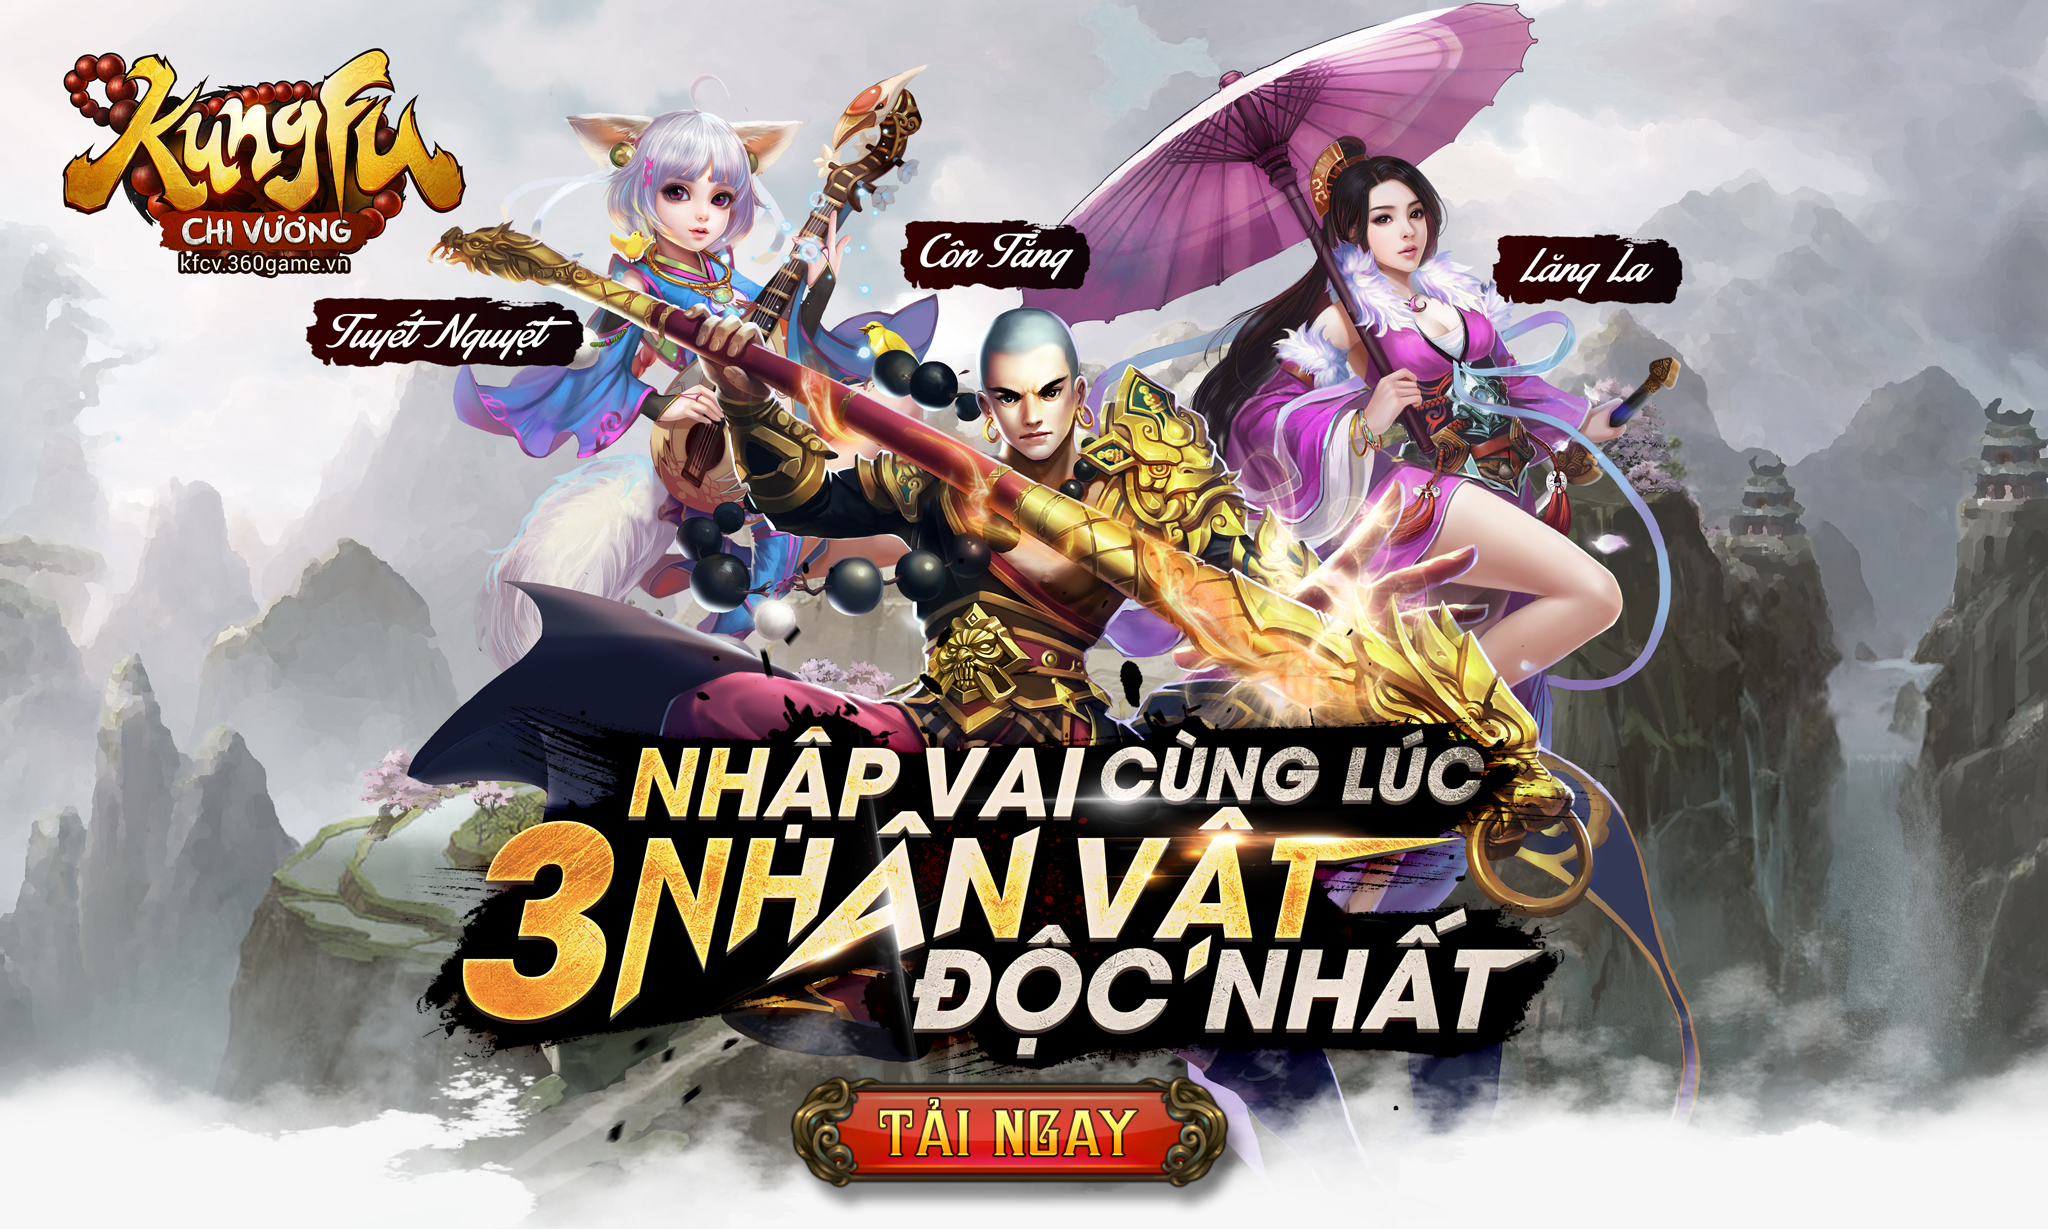 Game di động Kungfu Chi Vương ra mắt game thủ Việt ngay trong tháng 4